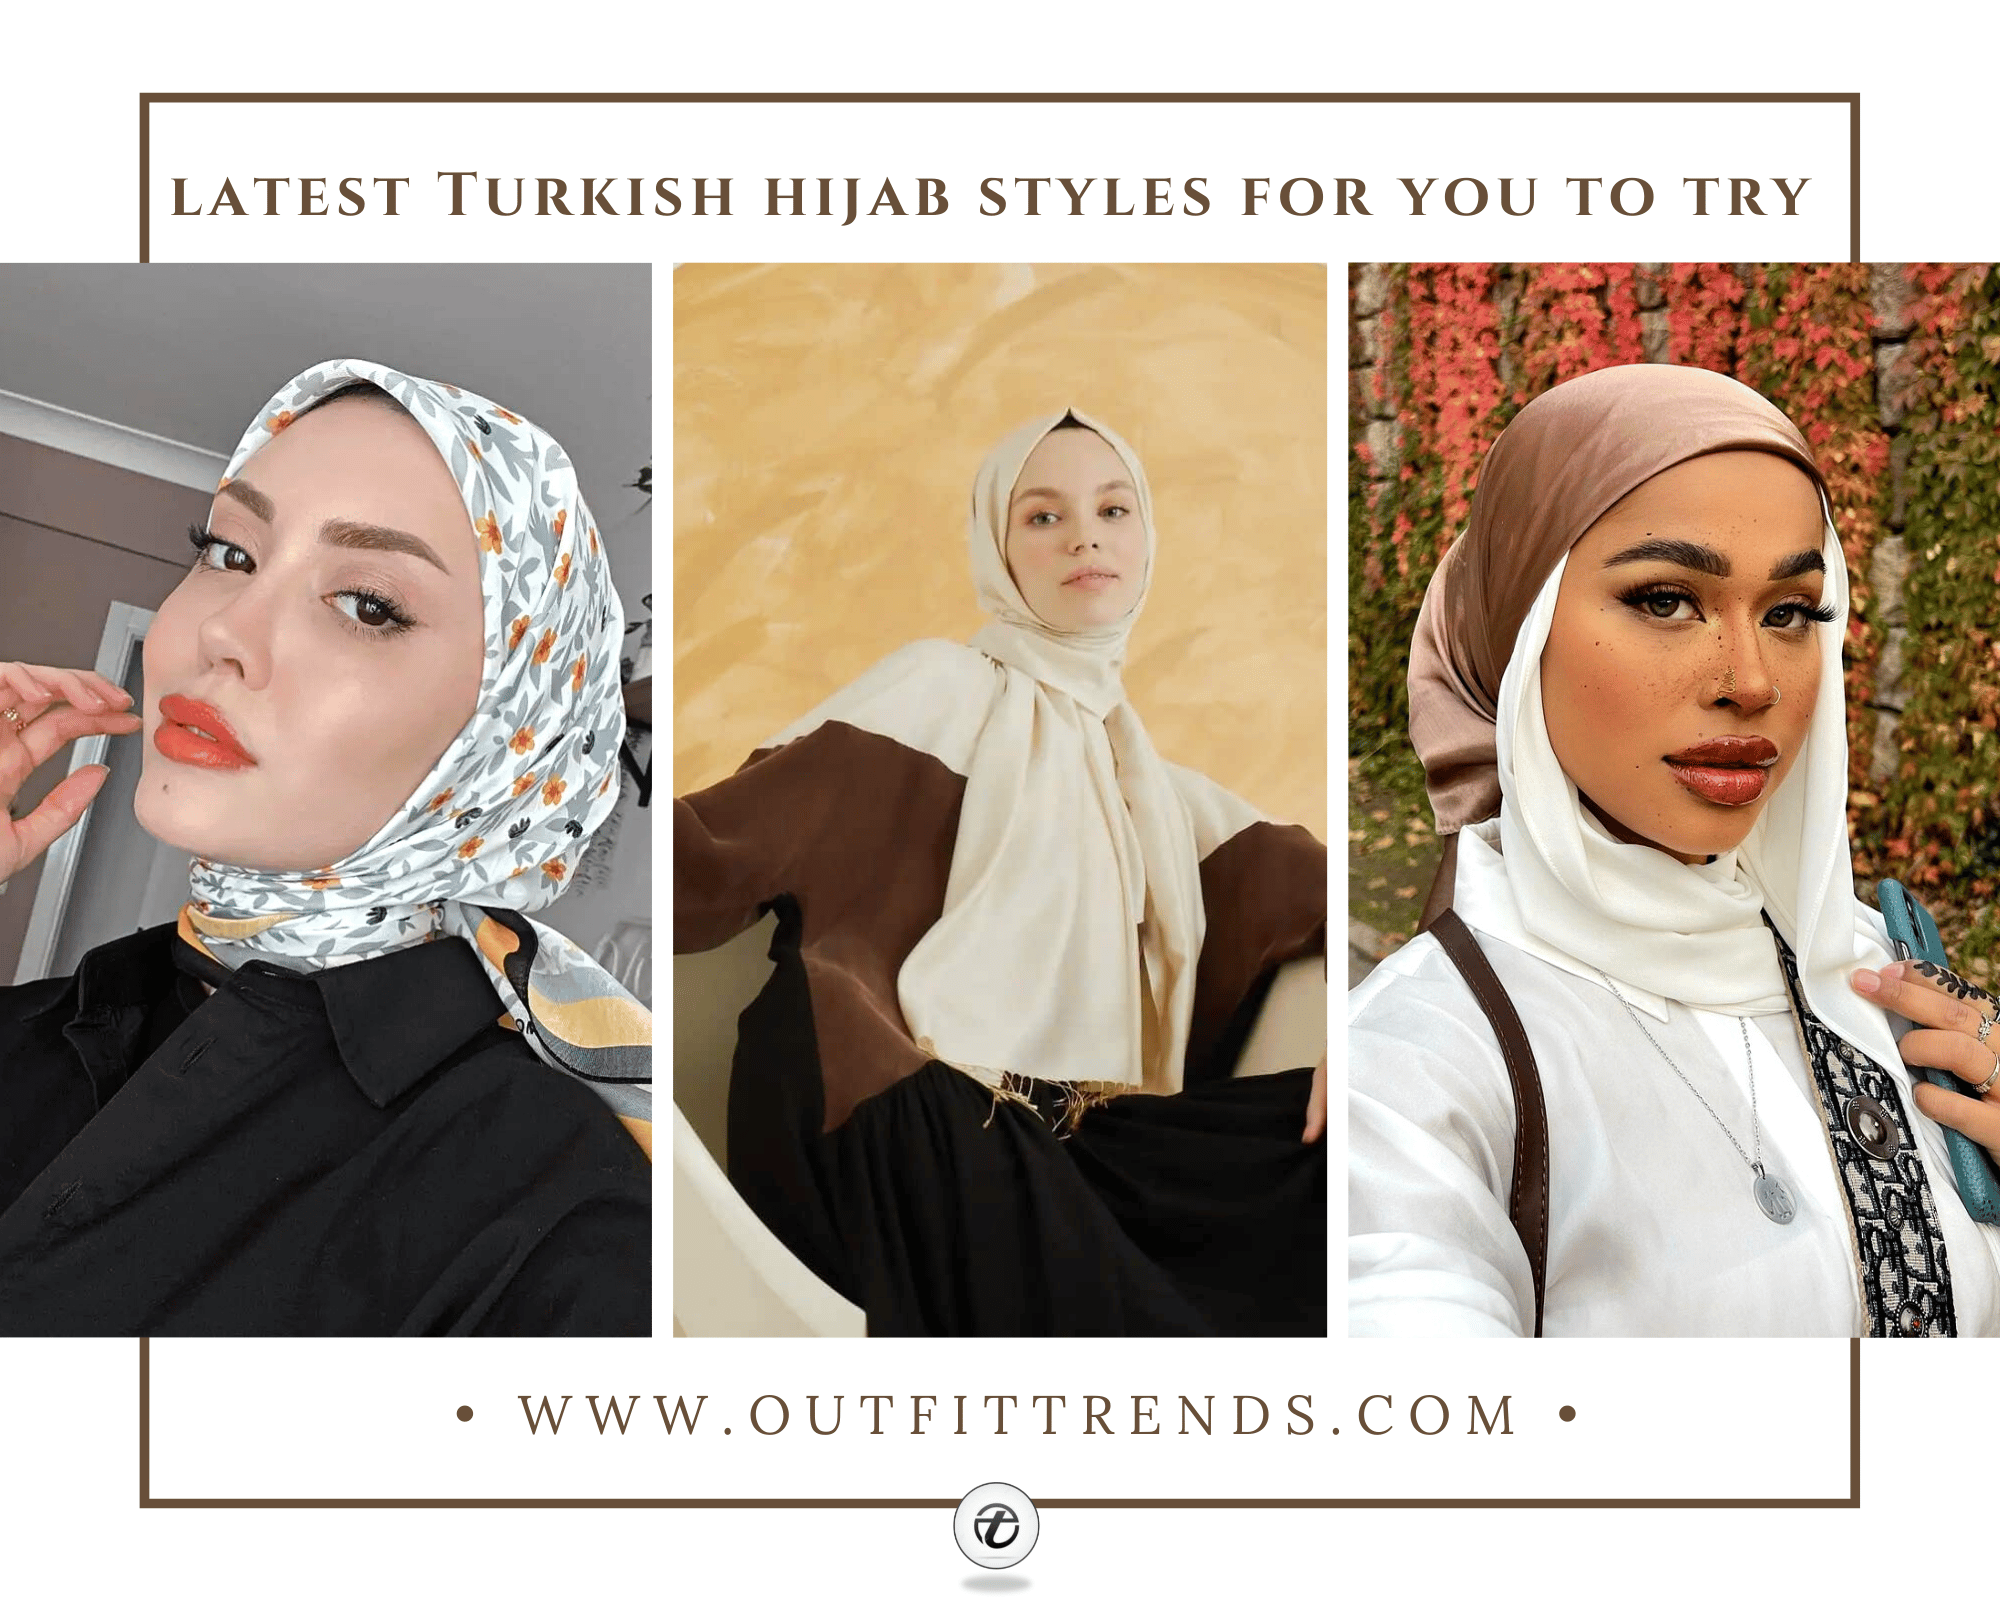 The Turkish woman in a hijab